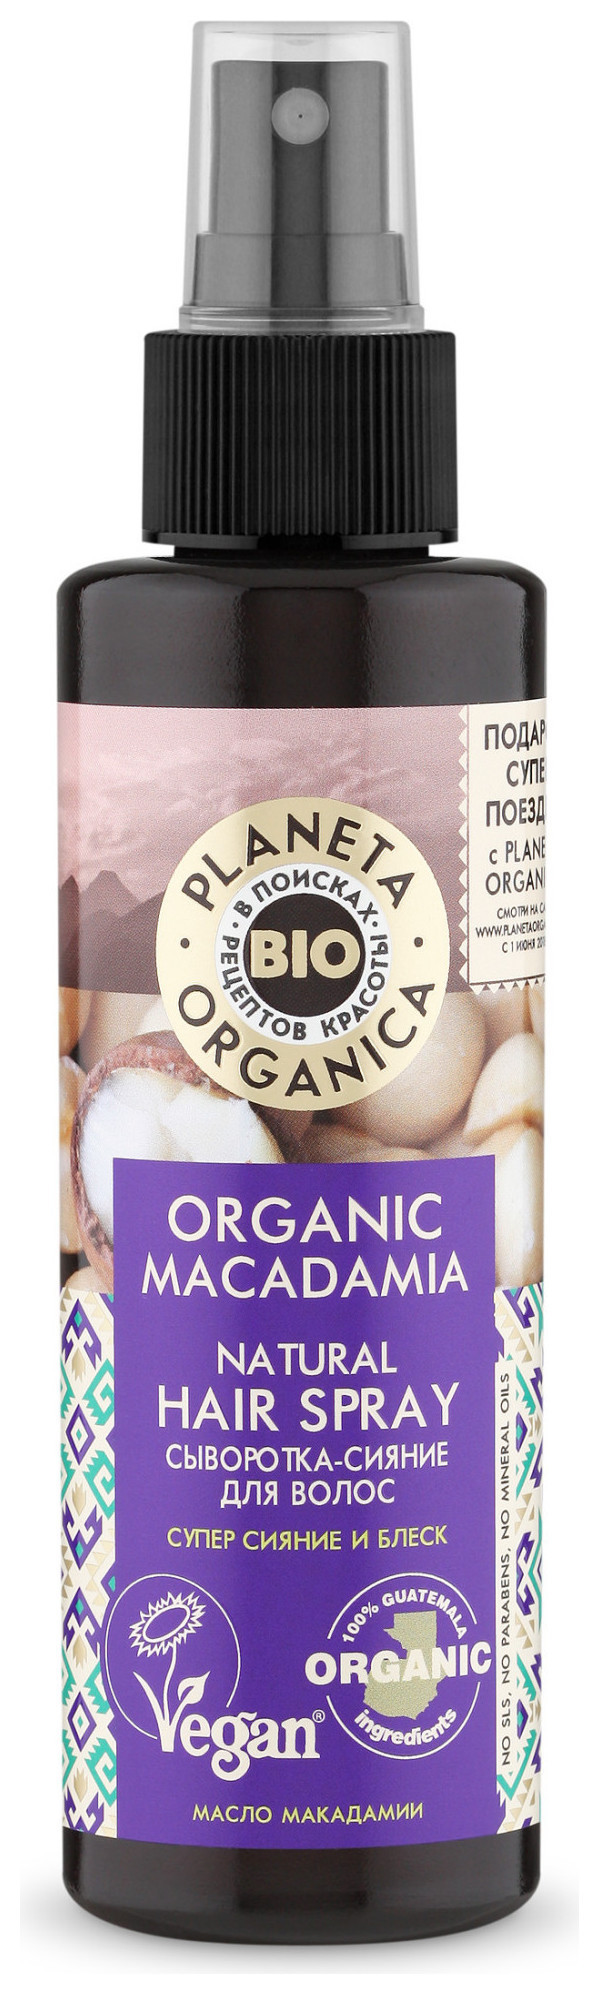 Сыворотка-сияние для волос Organic Macadamia Planeta Organica